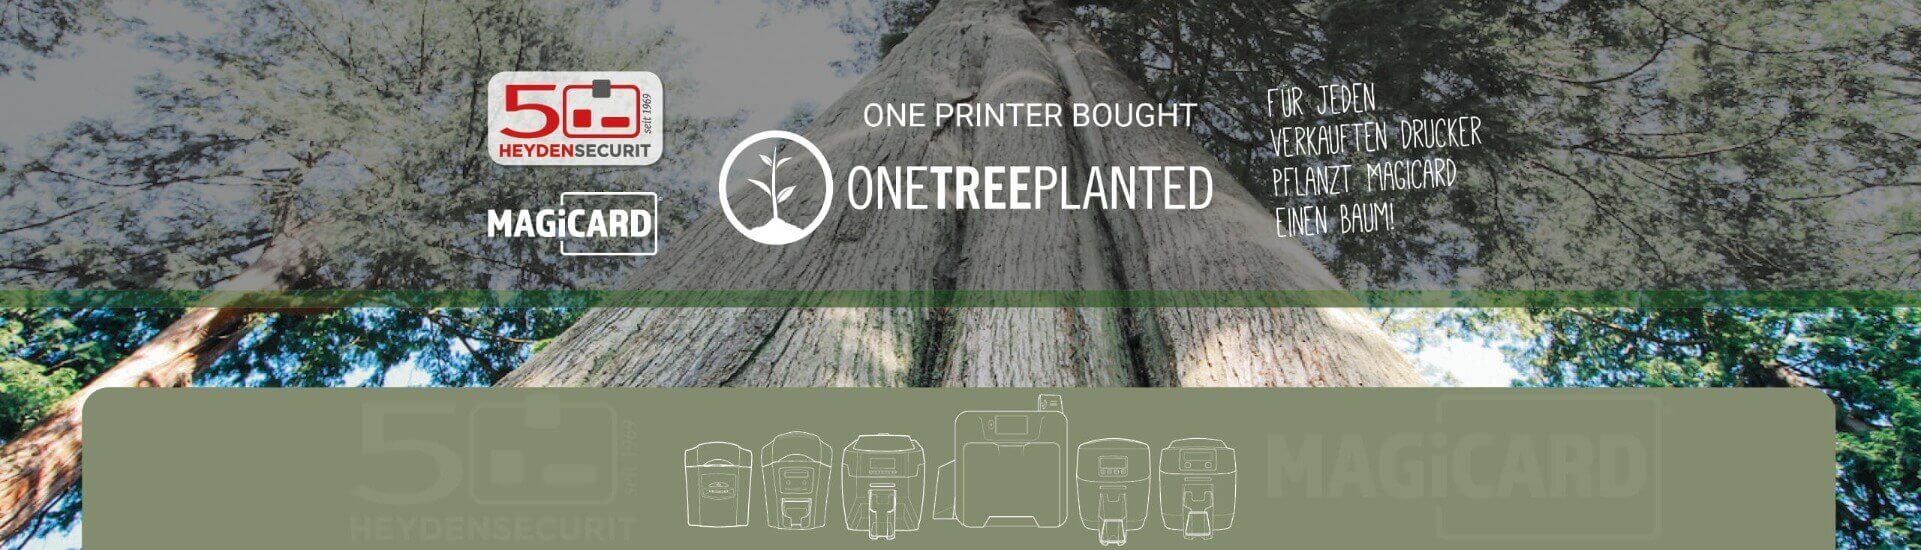 Einen Baum für jeden verkauften Drucker - bei dieser Aktion machen wir in Zusammenarbeit mit unserem Partner Magicard mit.